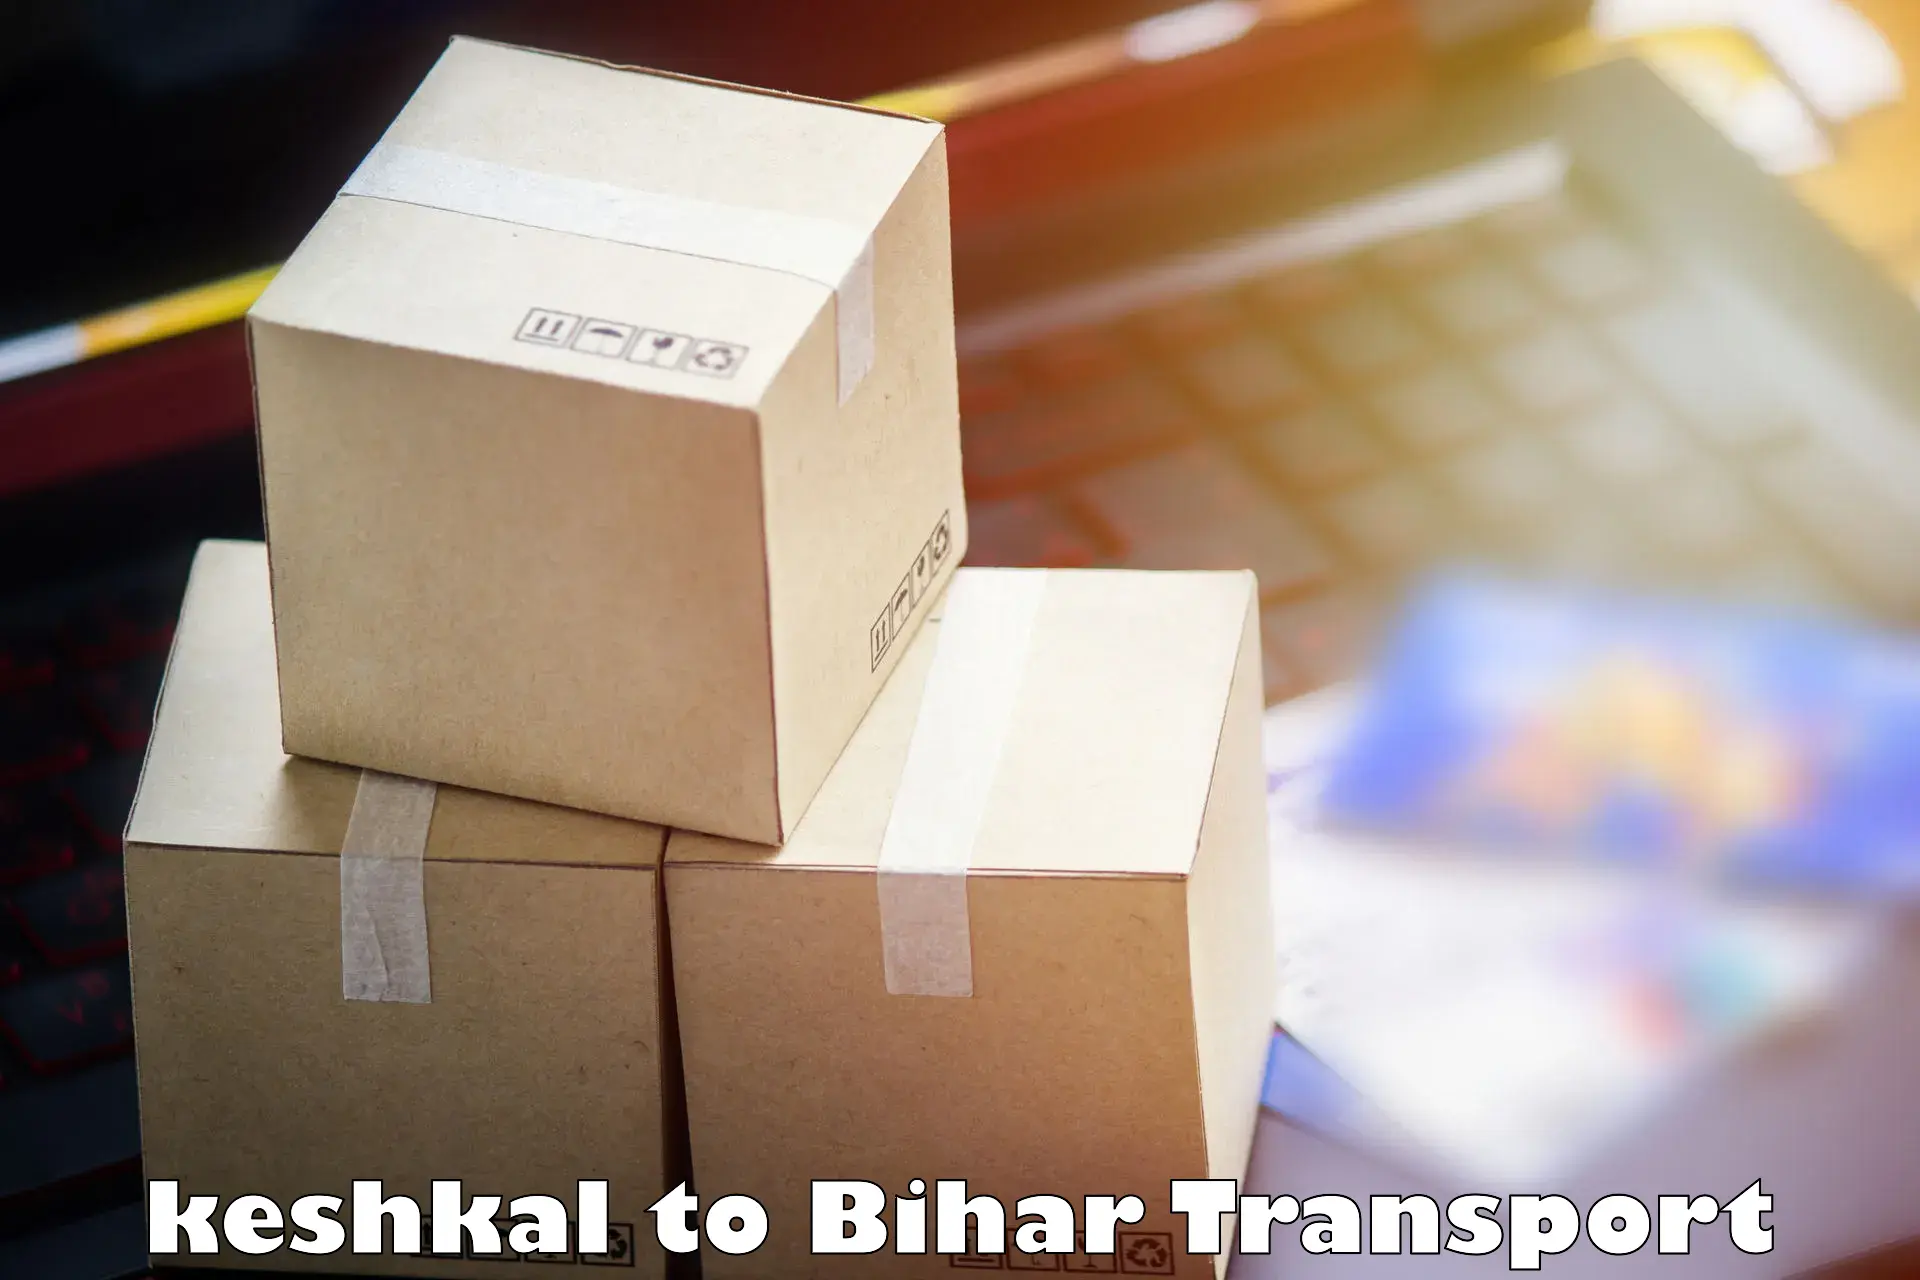 Vehicle parcel service keshkal to Baniapur